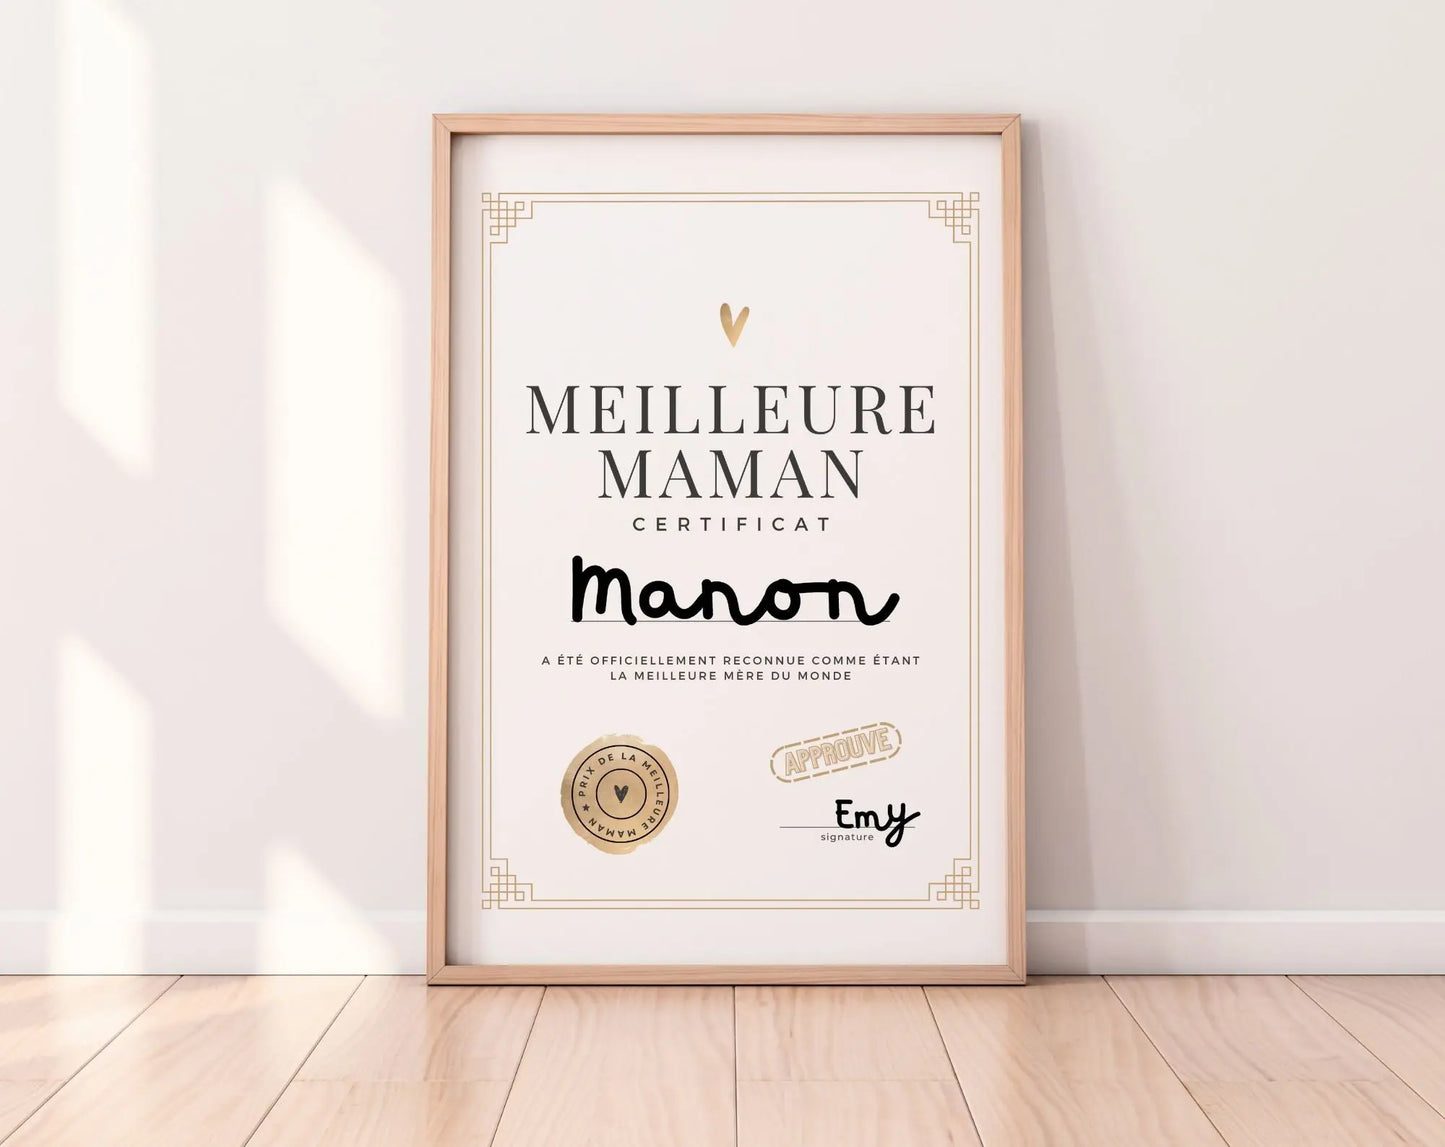 Certificat de la Meilleure Maman - Affiche pour une maman FLTMfrance